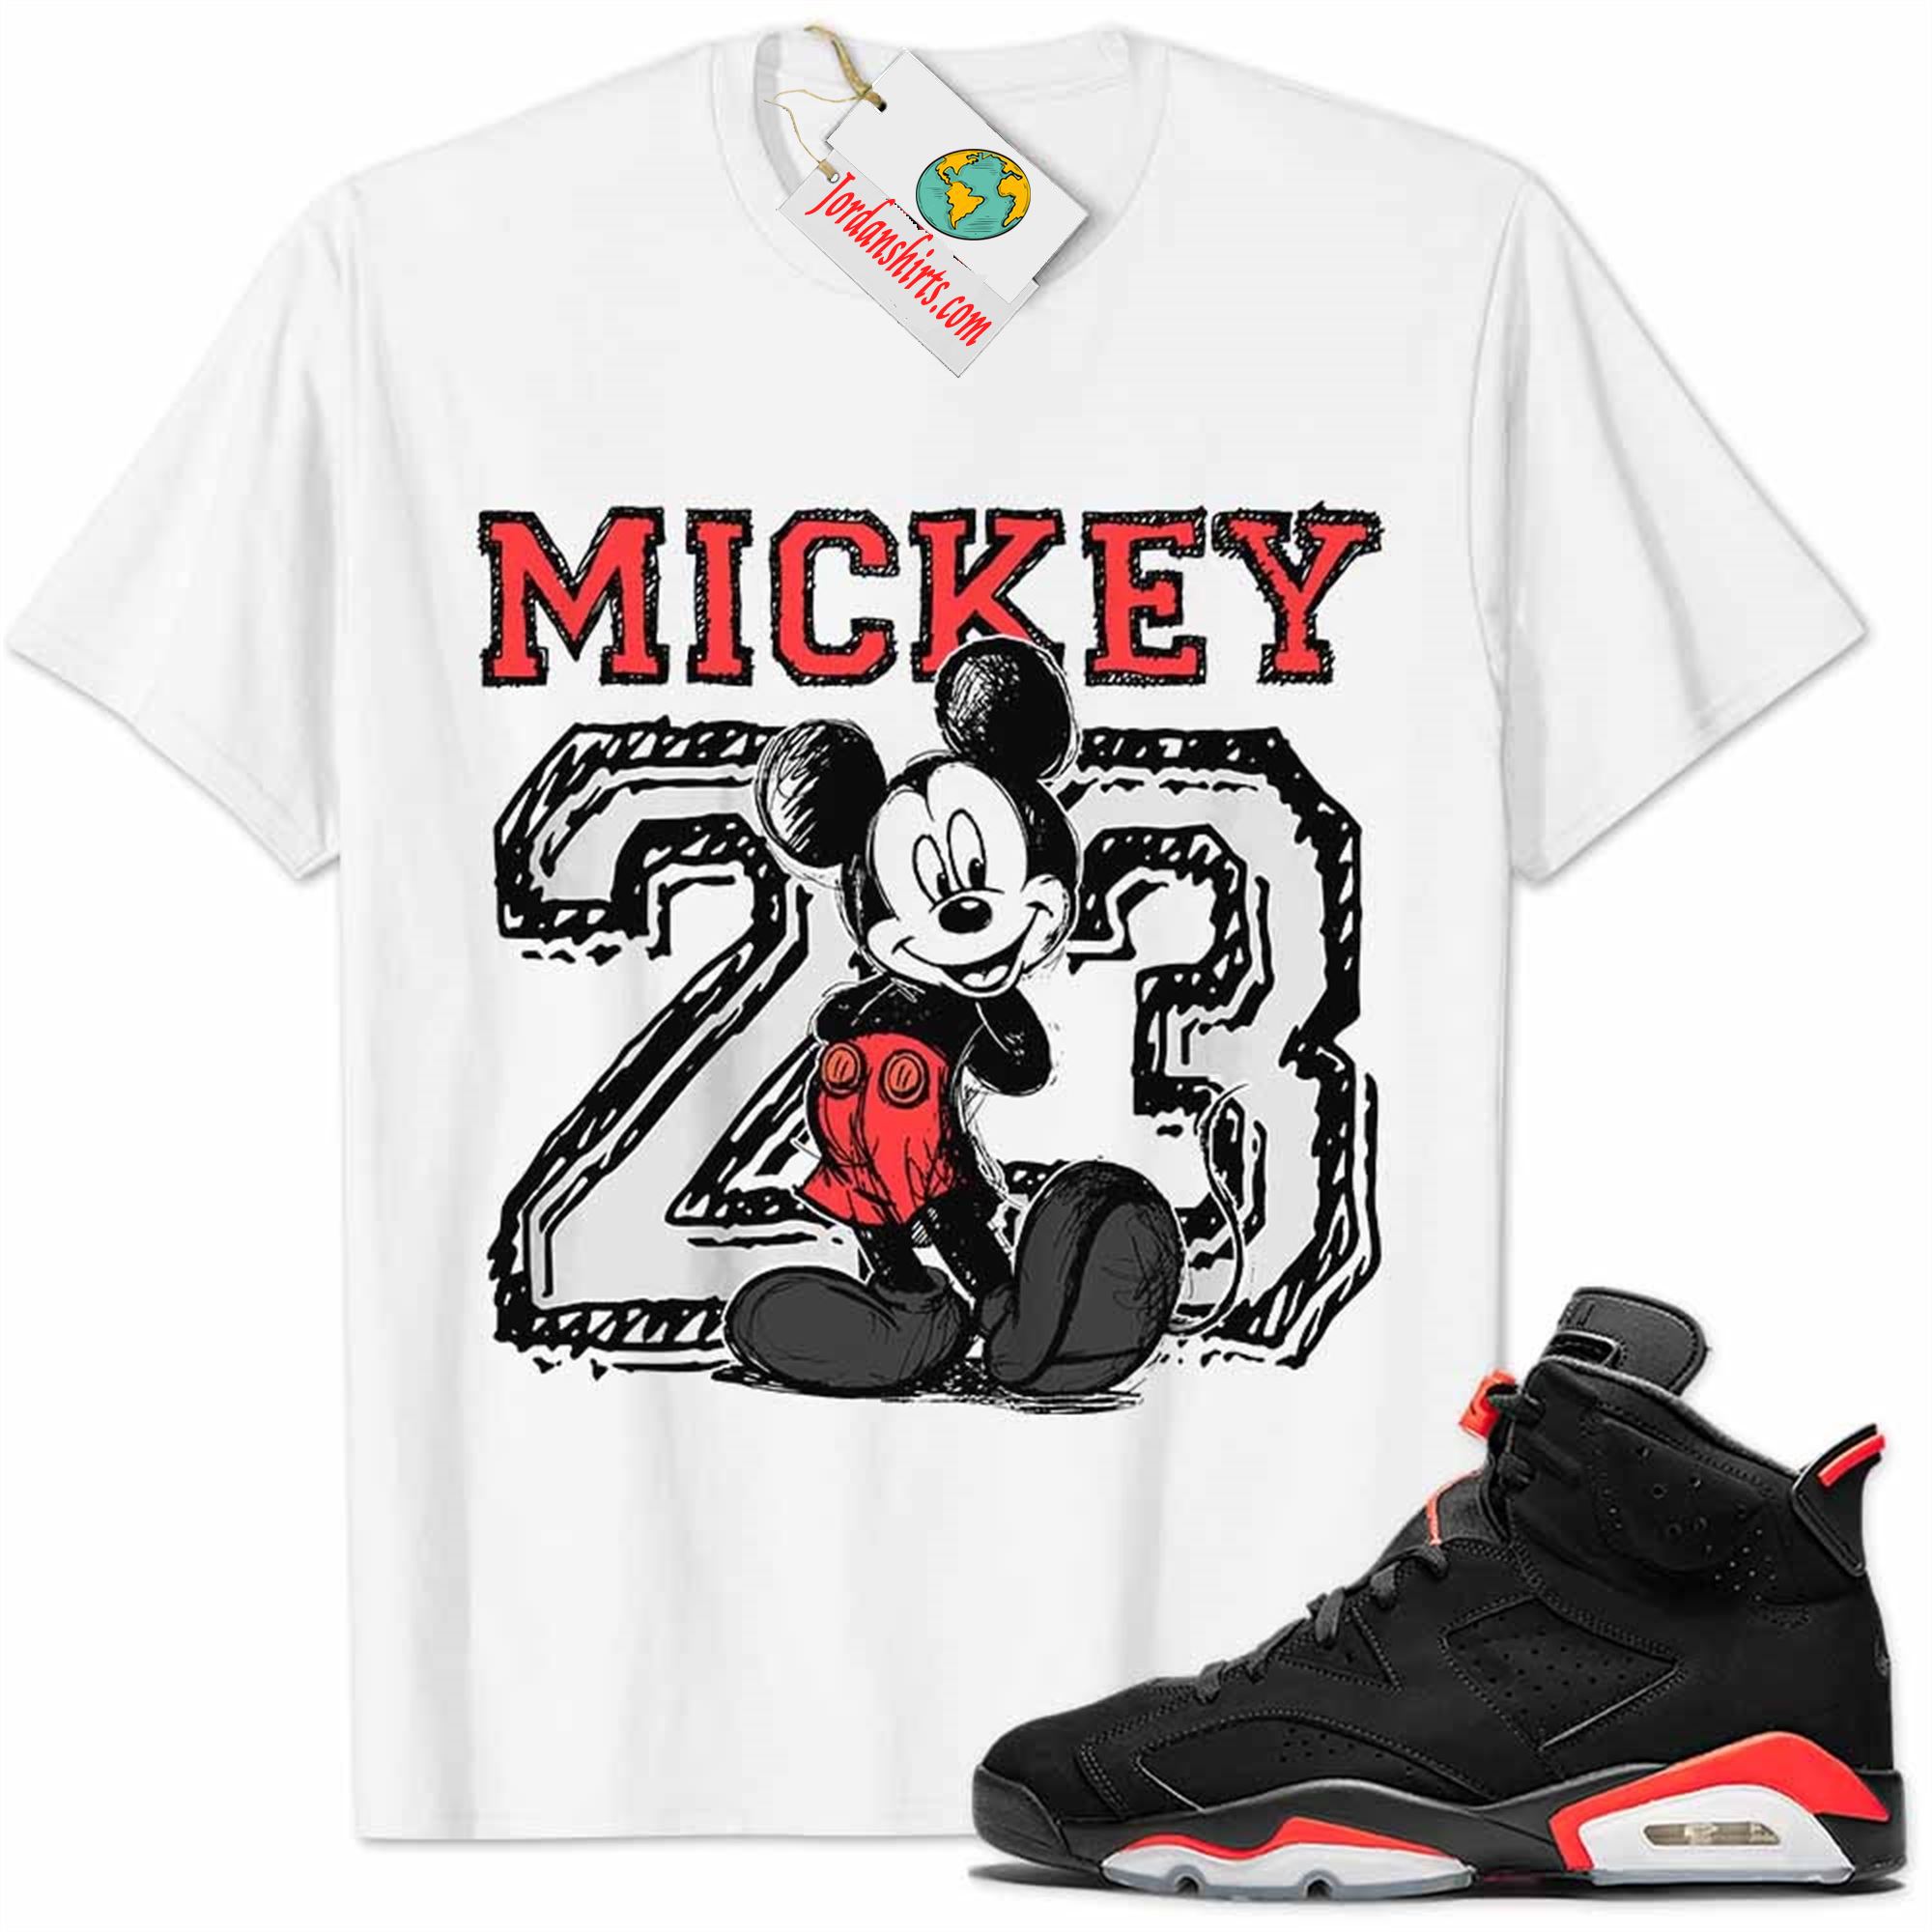 Jordan 6 Shirt, Infrared 6s Shirt Mickey 23 Michael Jordan Number Draw White Plus Size Up To 5xl